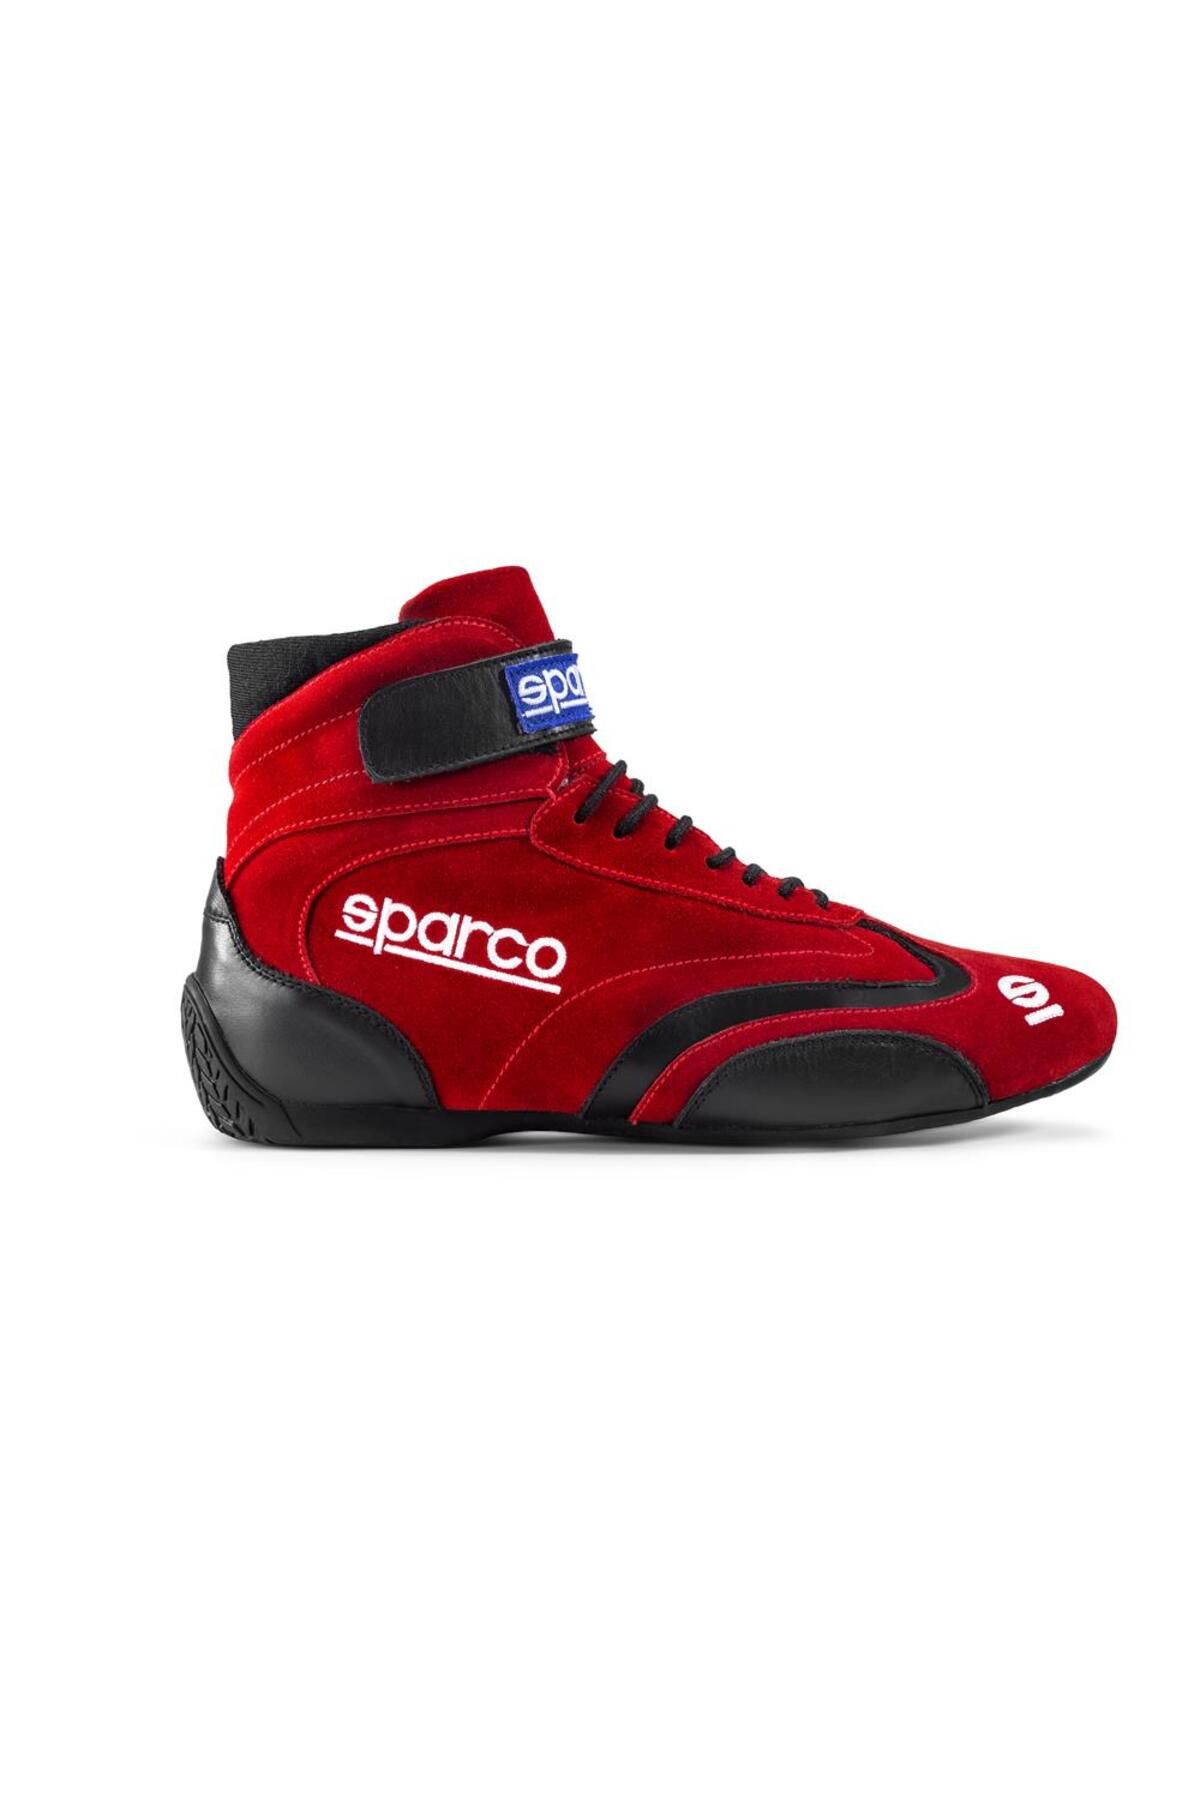 Sparco Top Yarış Ayakkabısı Fia Onaylı Kırmızı 42 Numara